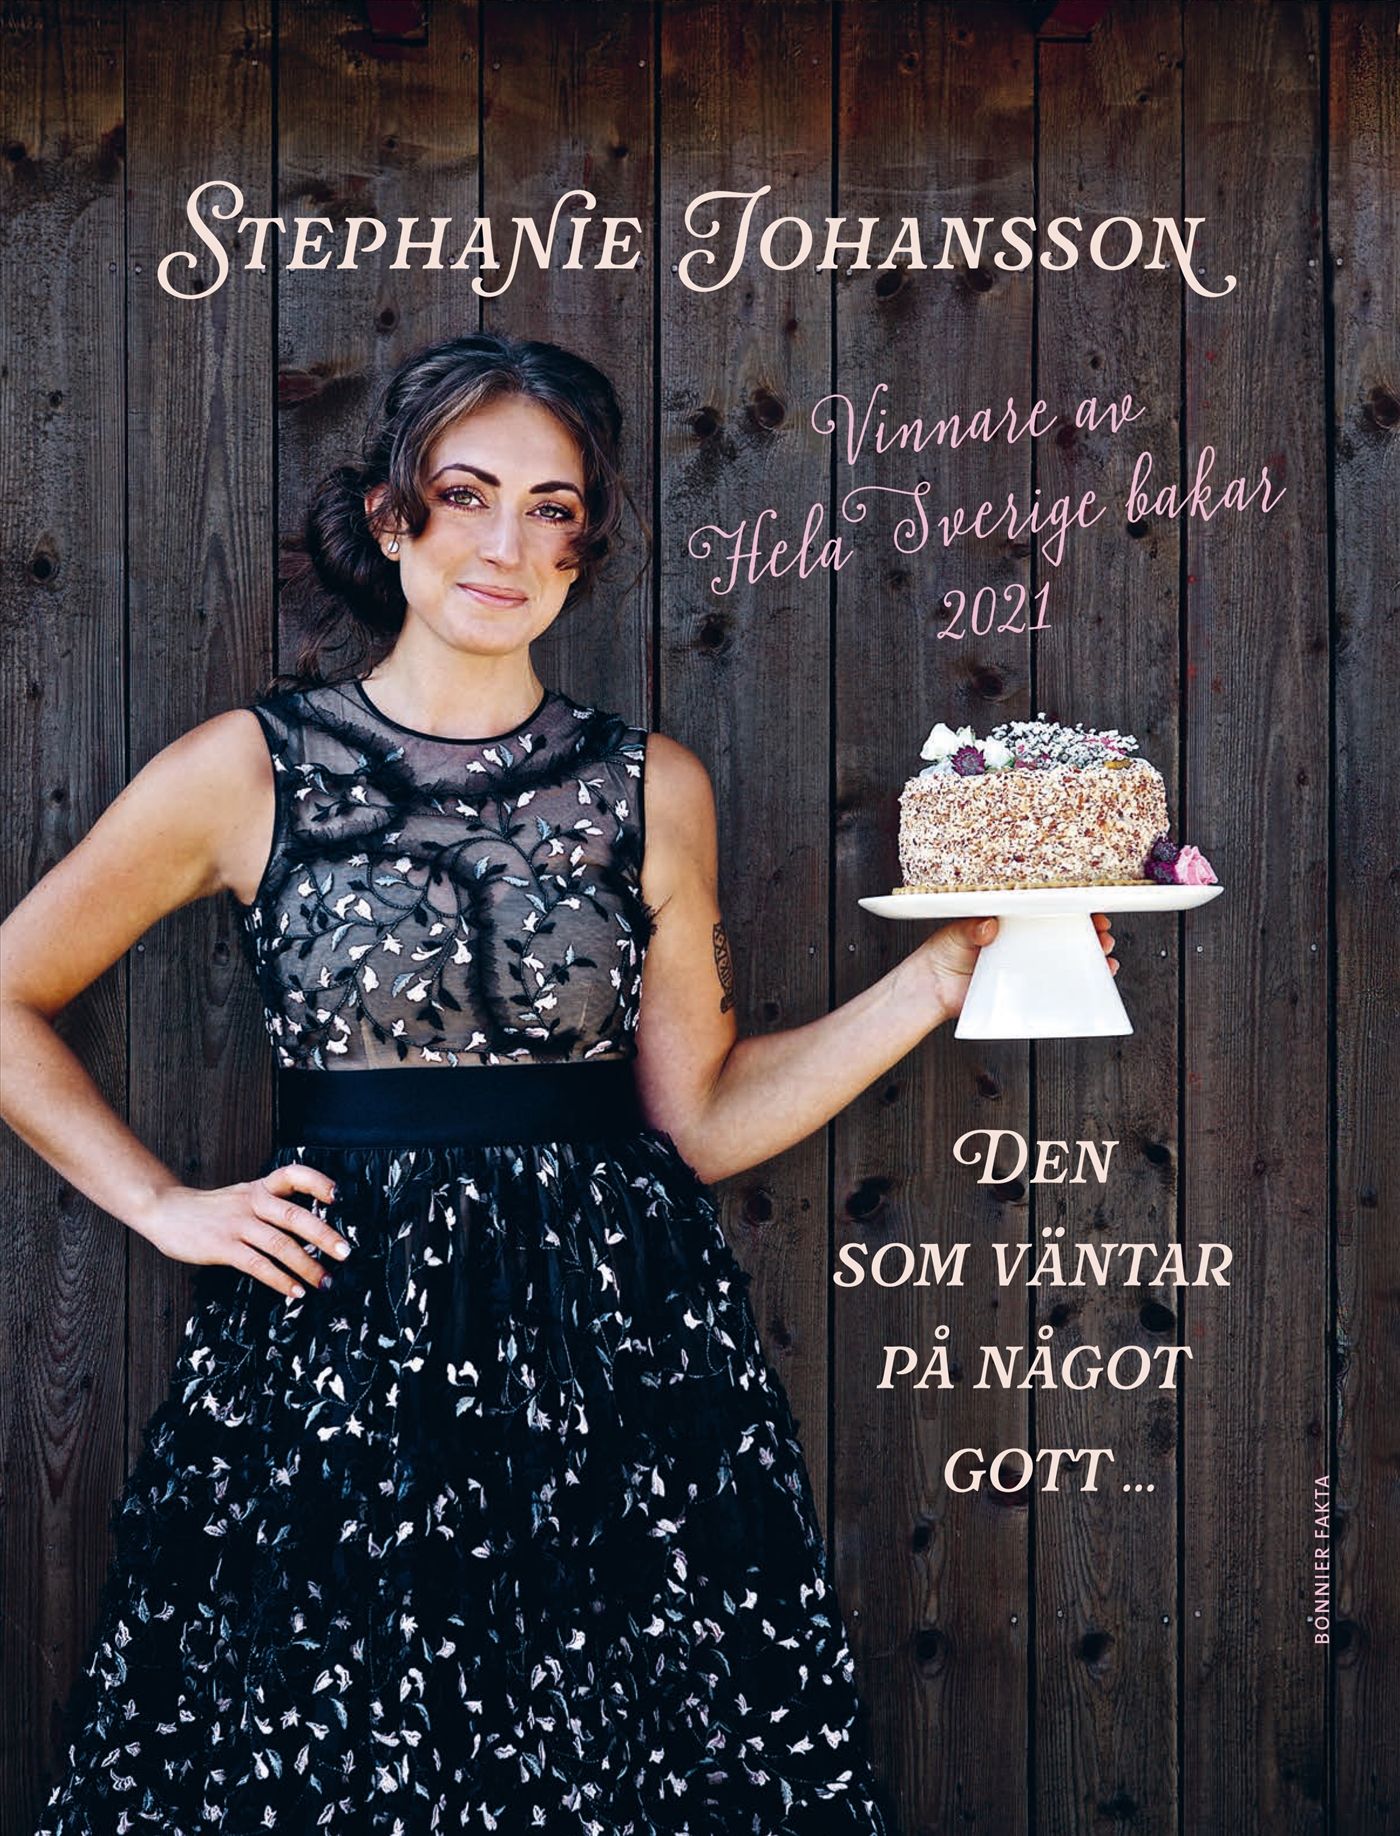 Den som väntar på något gott ..., e-bok av Stephanie Johansson